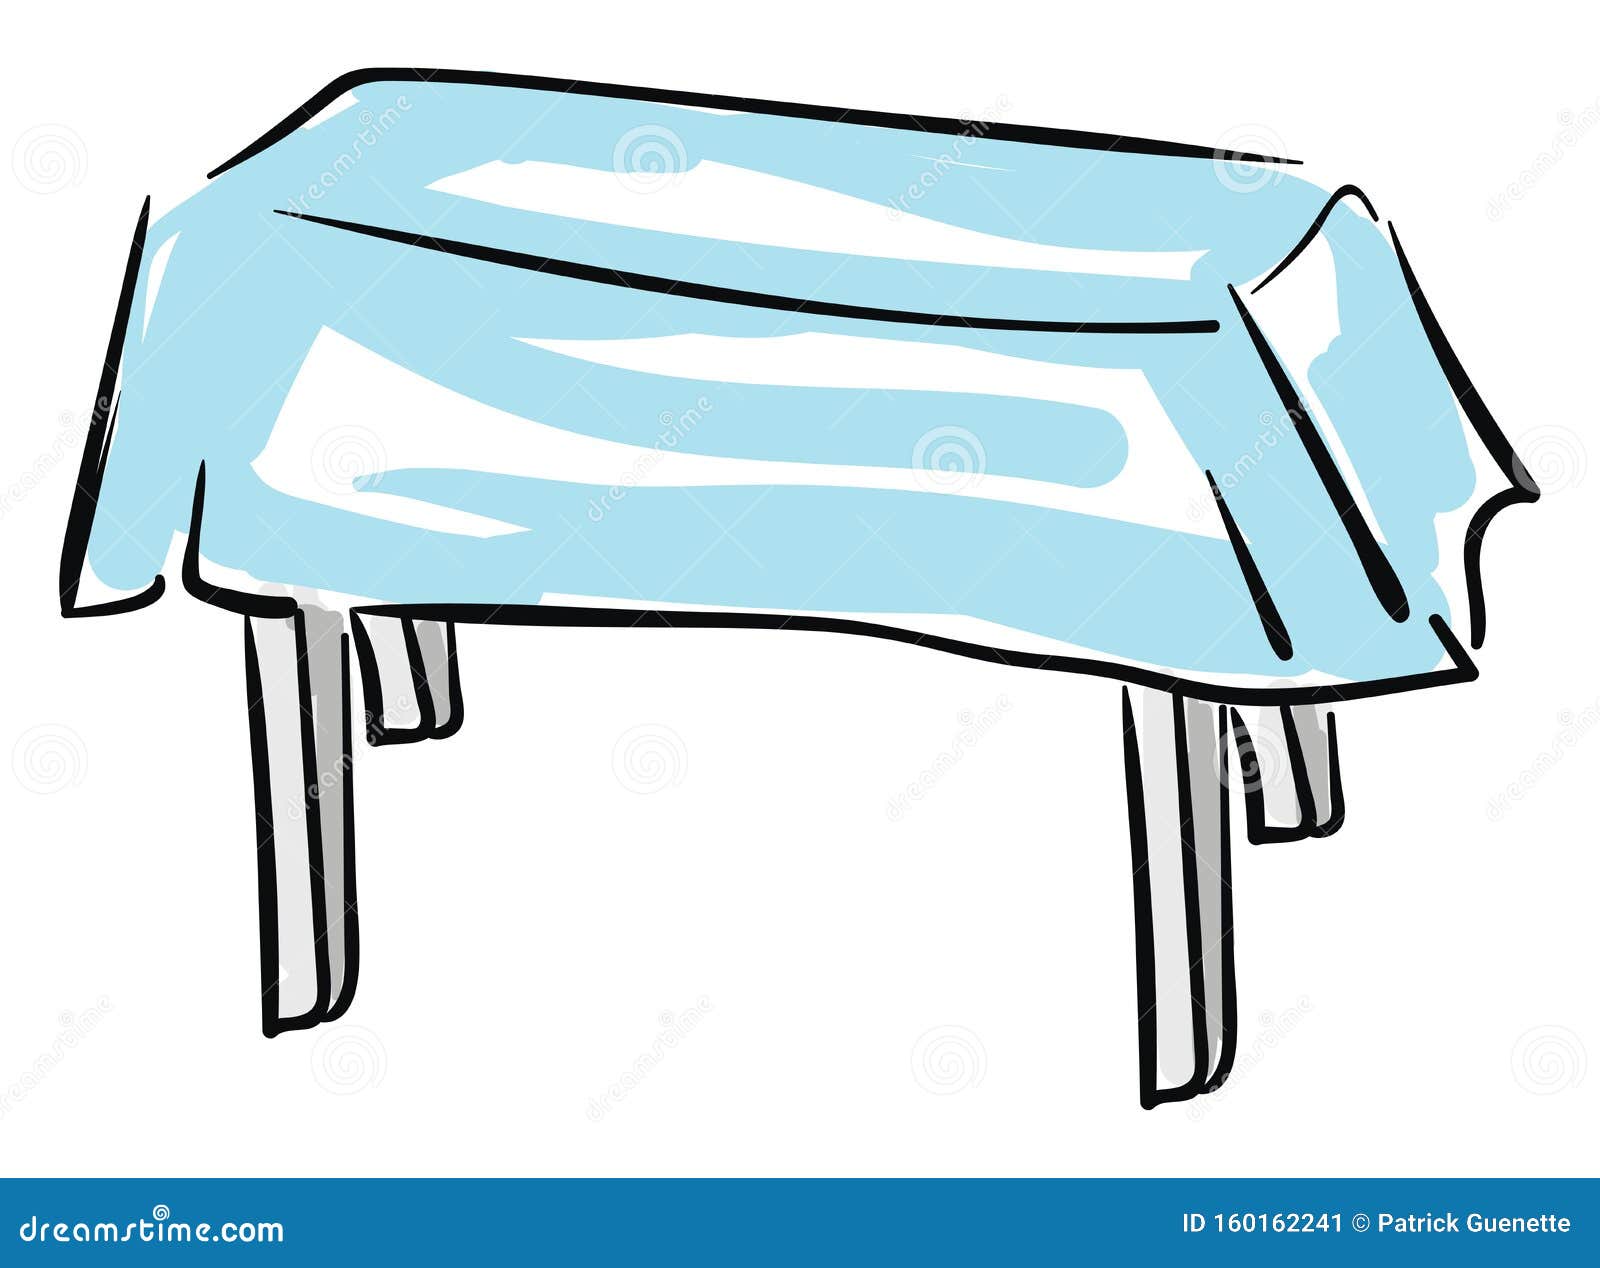 Рисуем стол с голубым